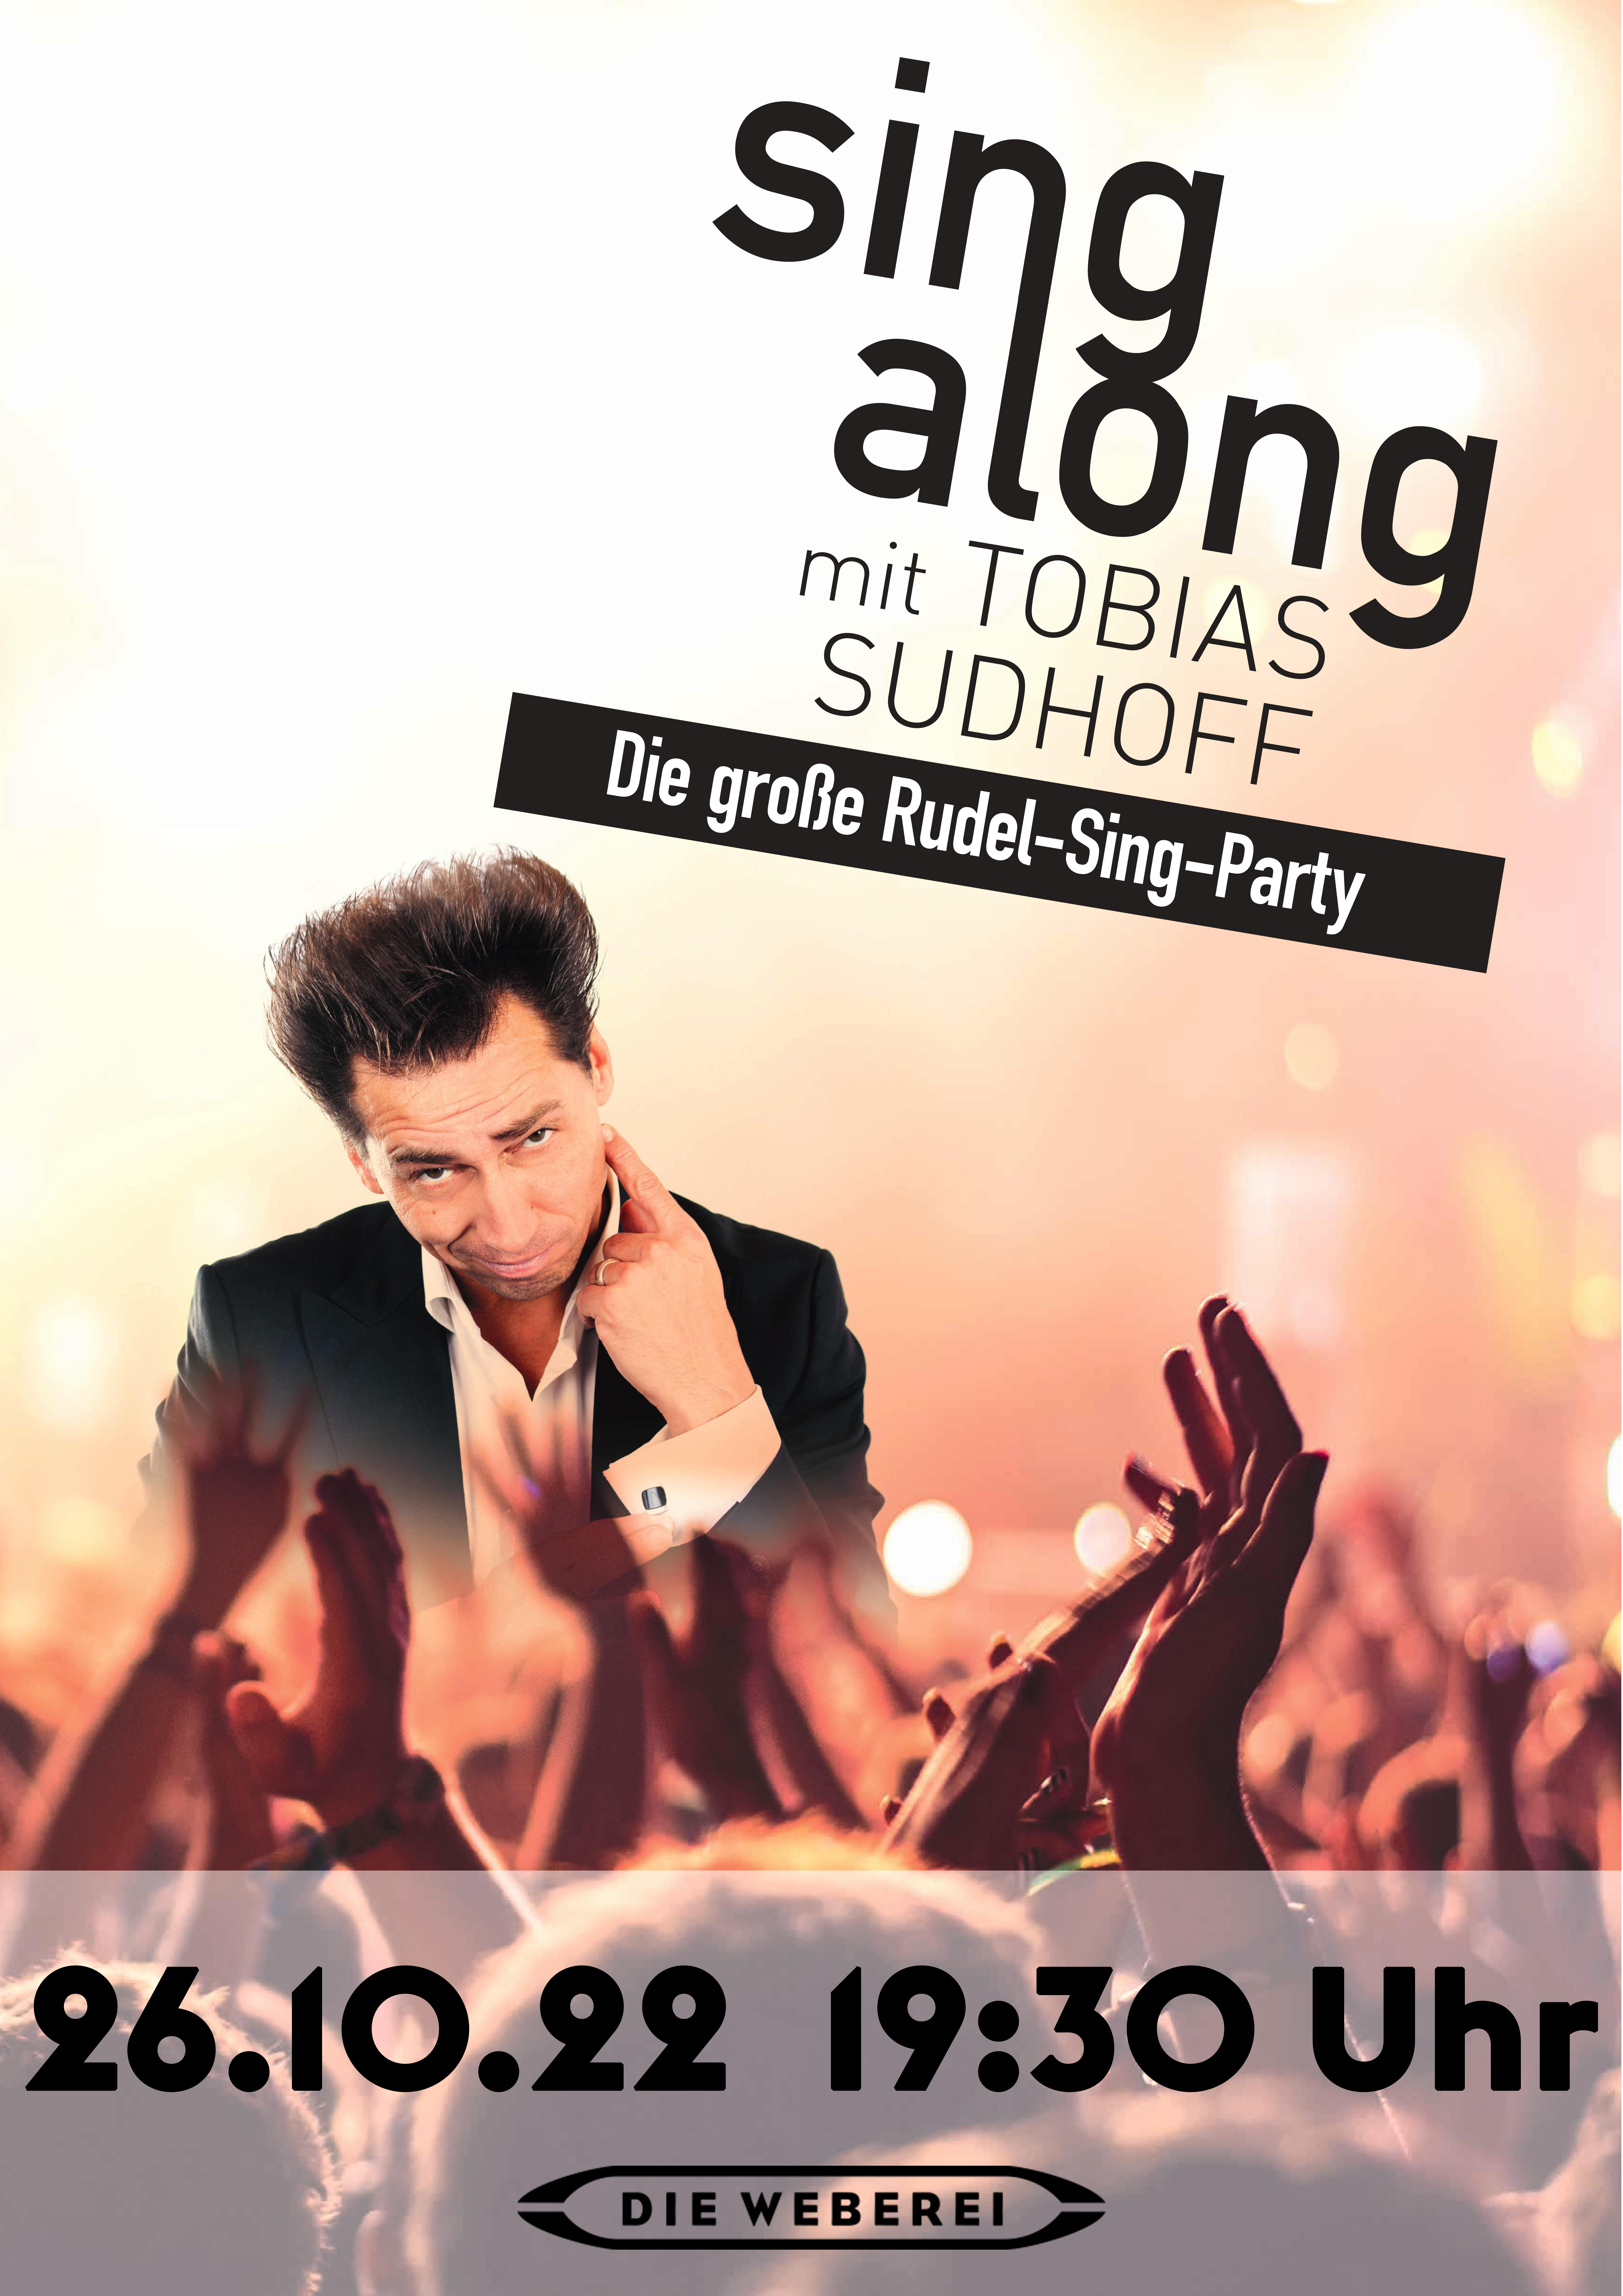 Sing along – Die Rudel-Sing-Party mit Tobias Sudhoff